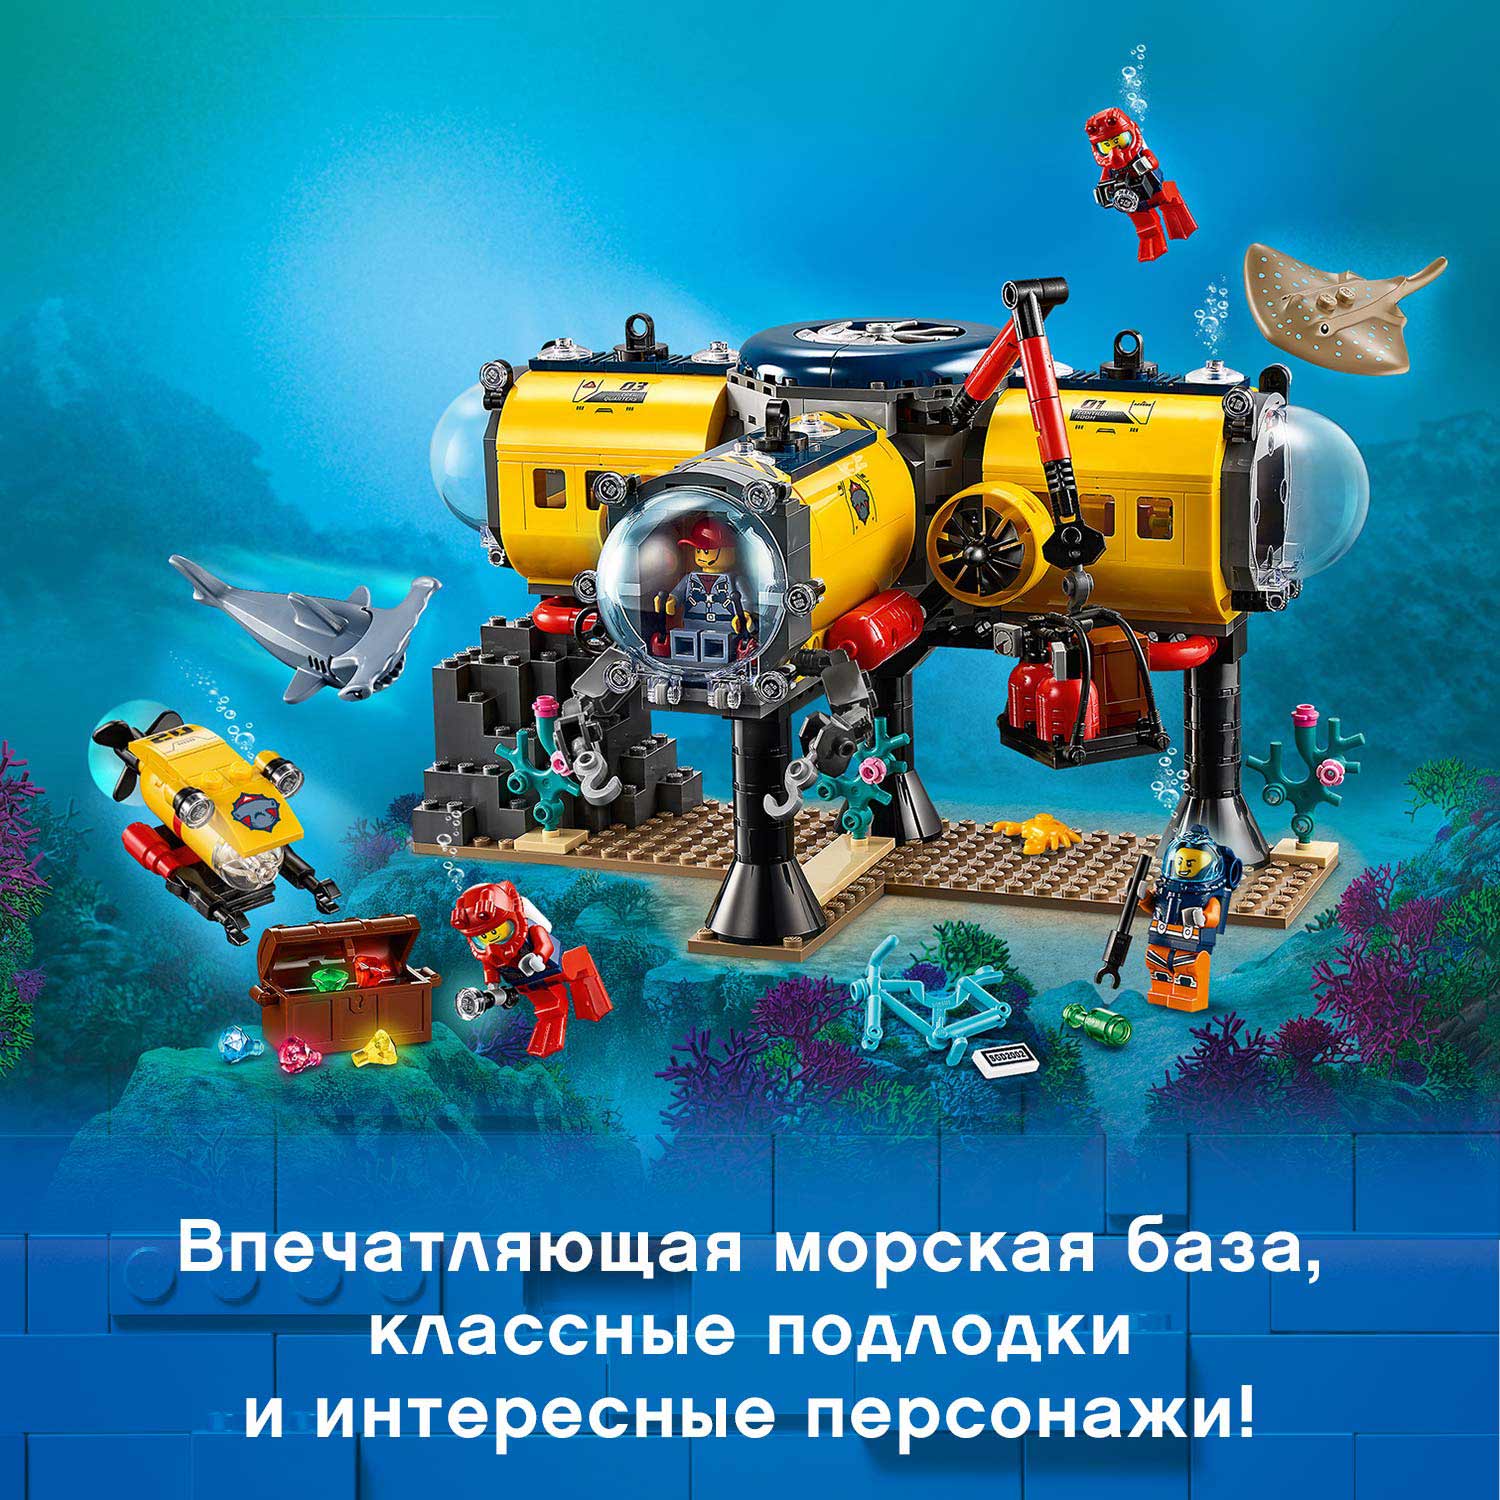 Конструктор LEGO City Oceans 60265 Океан: исследовательская база